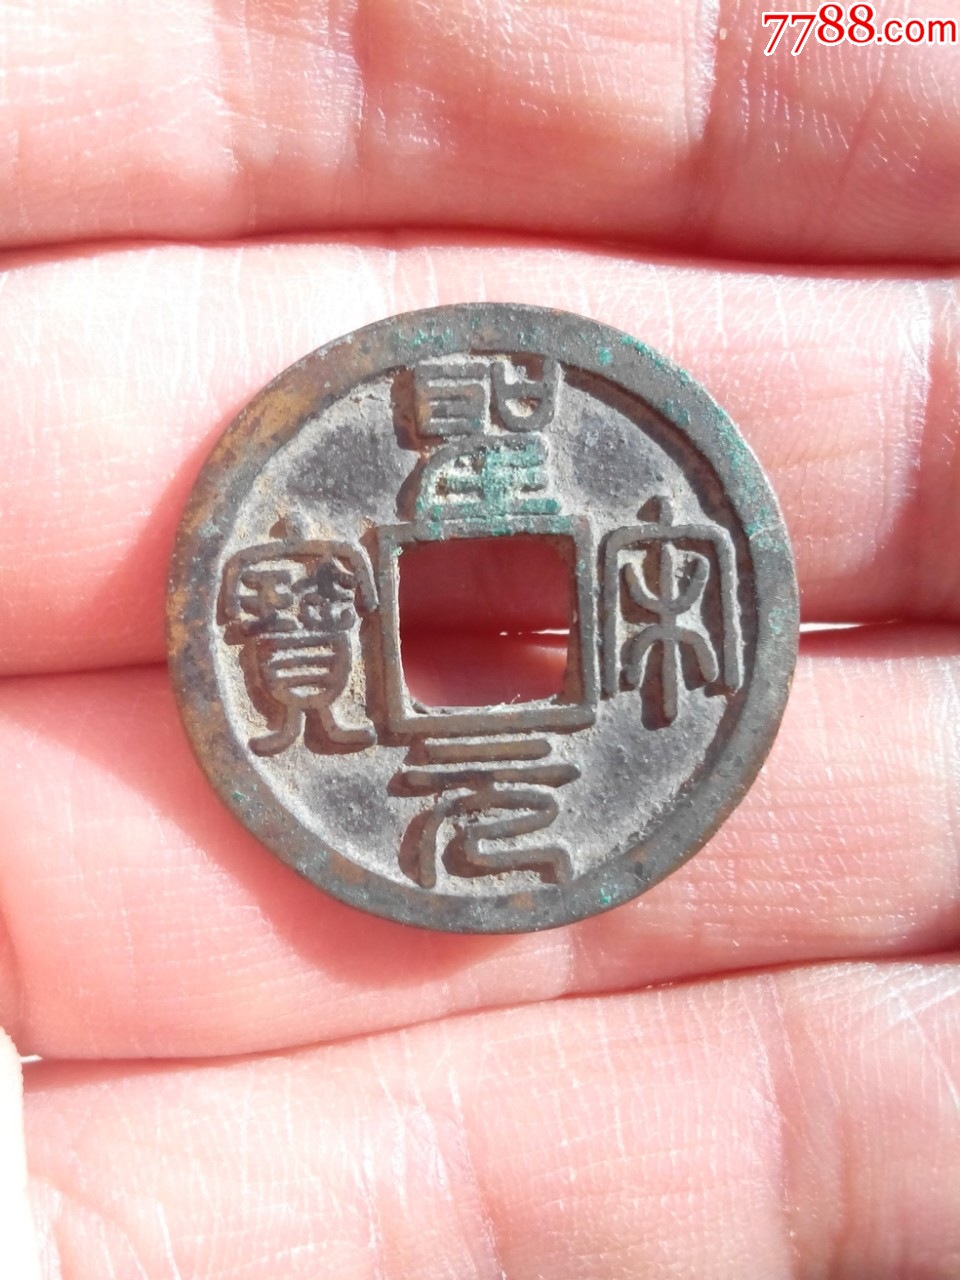 北宋古钱币图片及价格图片